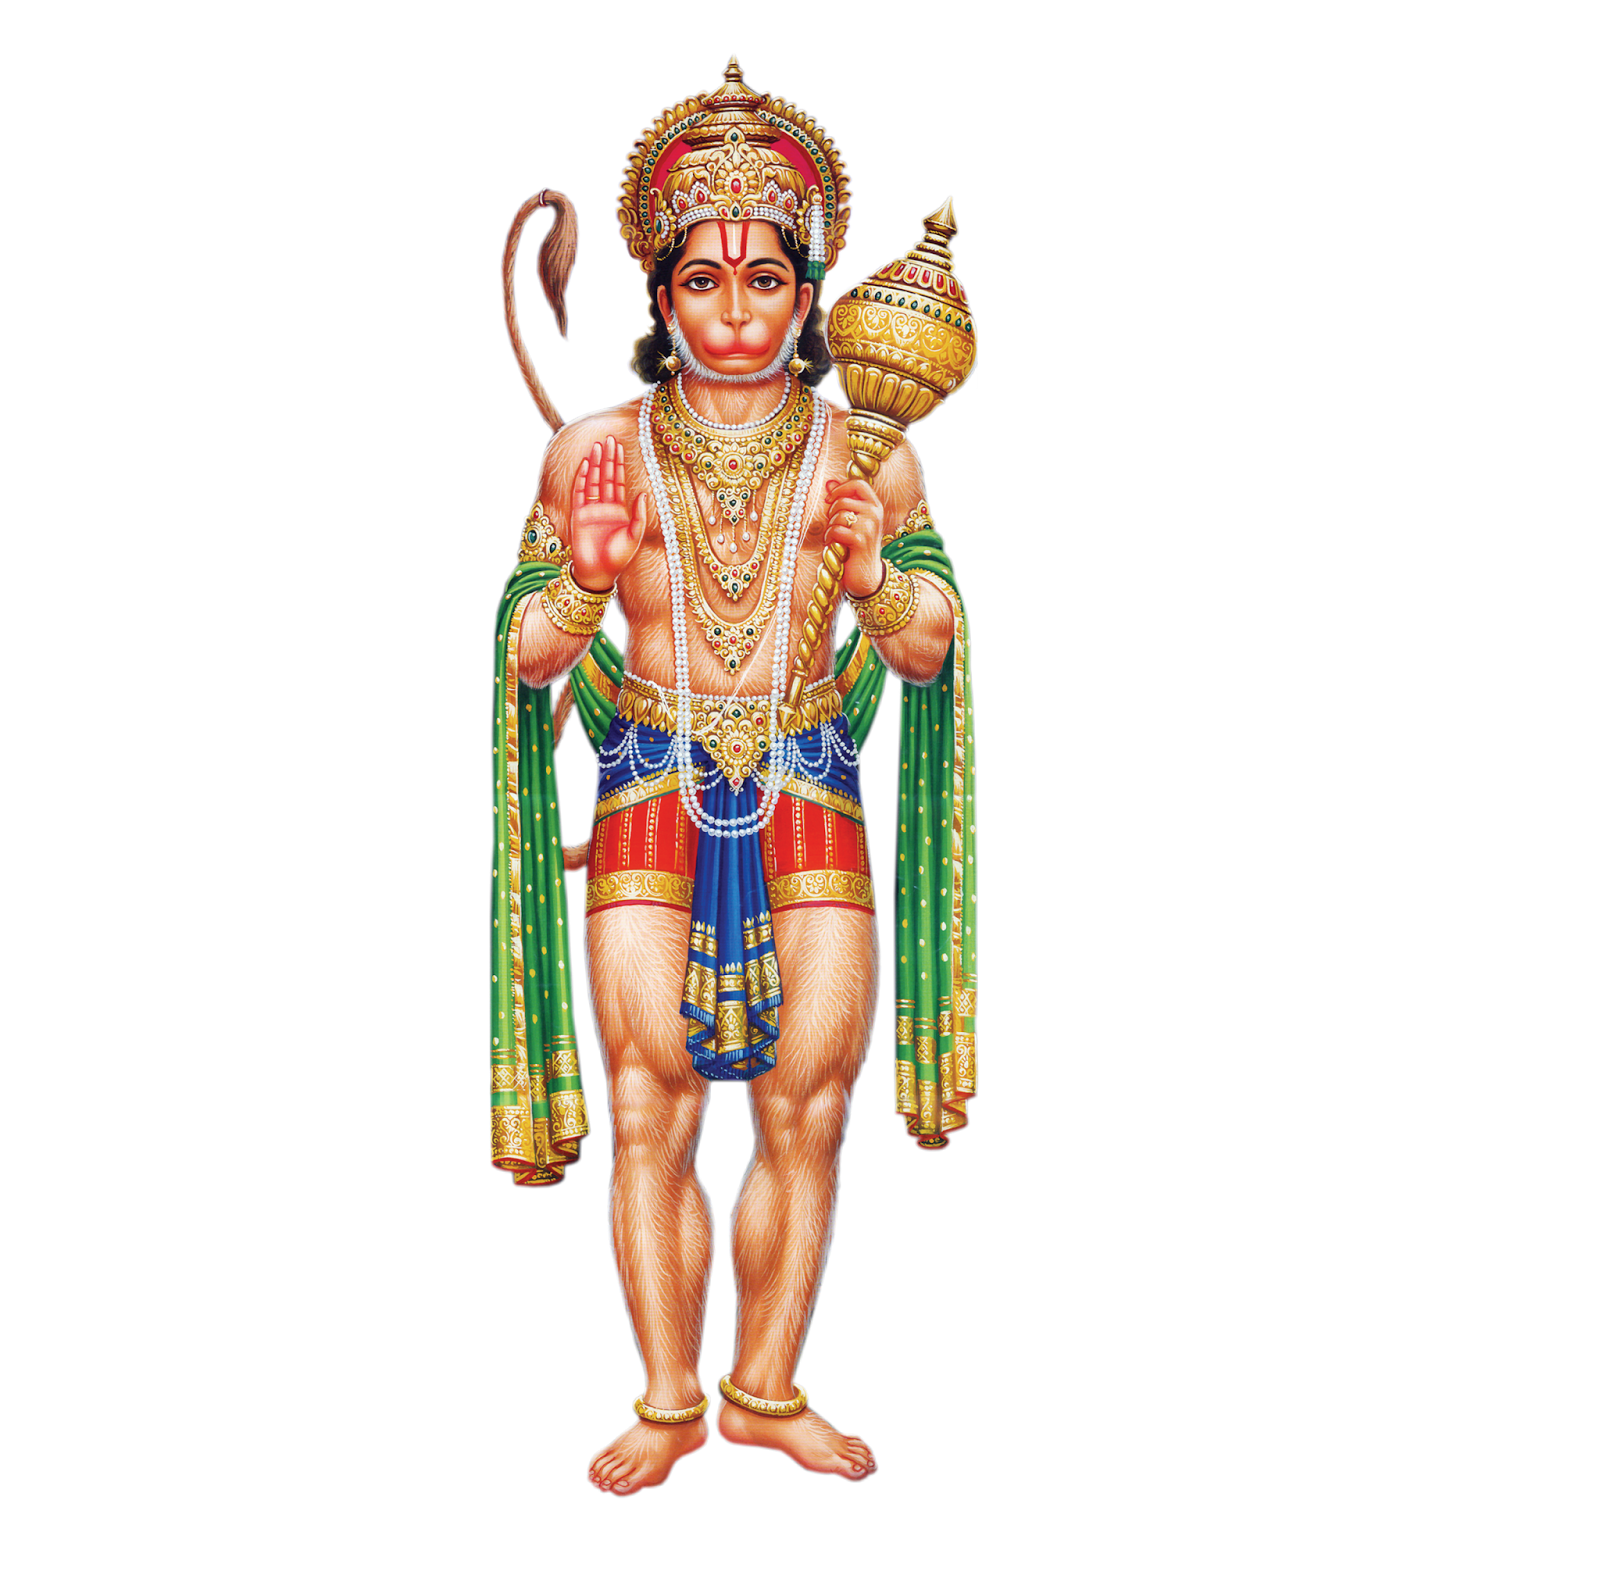 Lord Hanuman PNG Images, Transparent Lord Hanuman Image Download - PNGitem